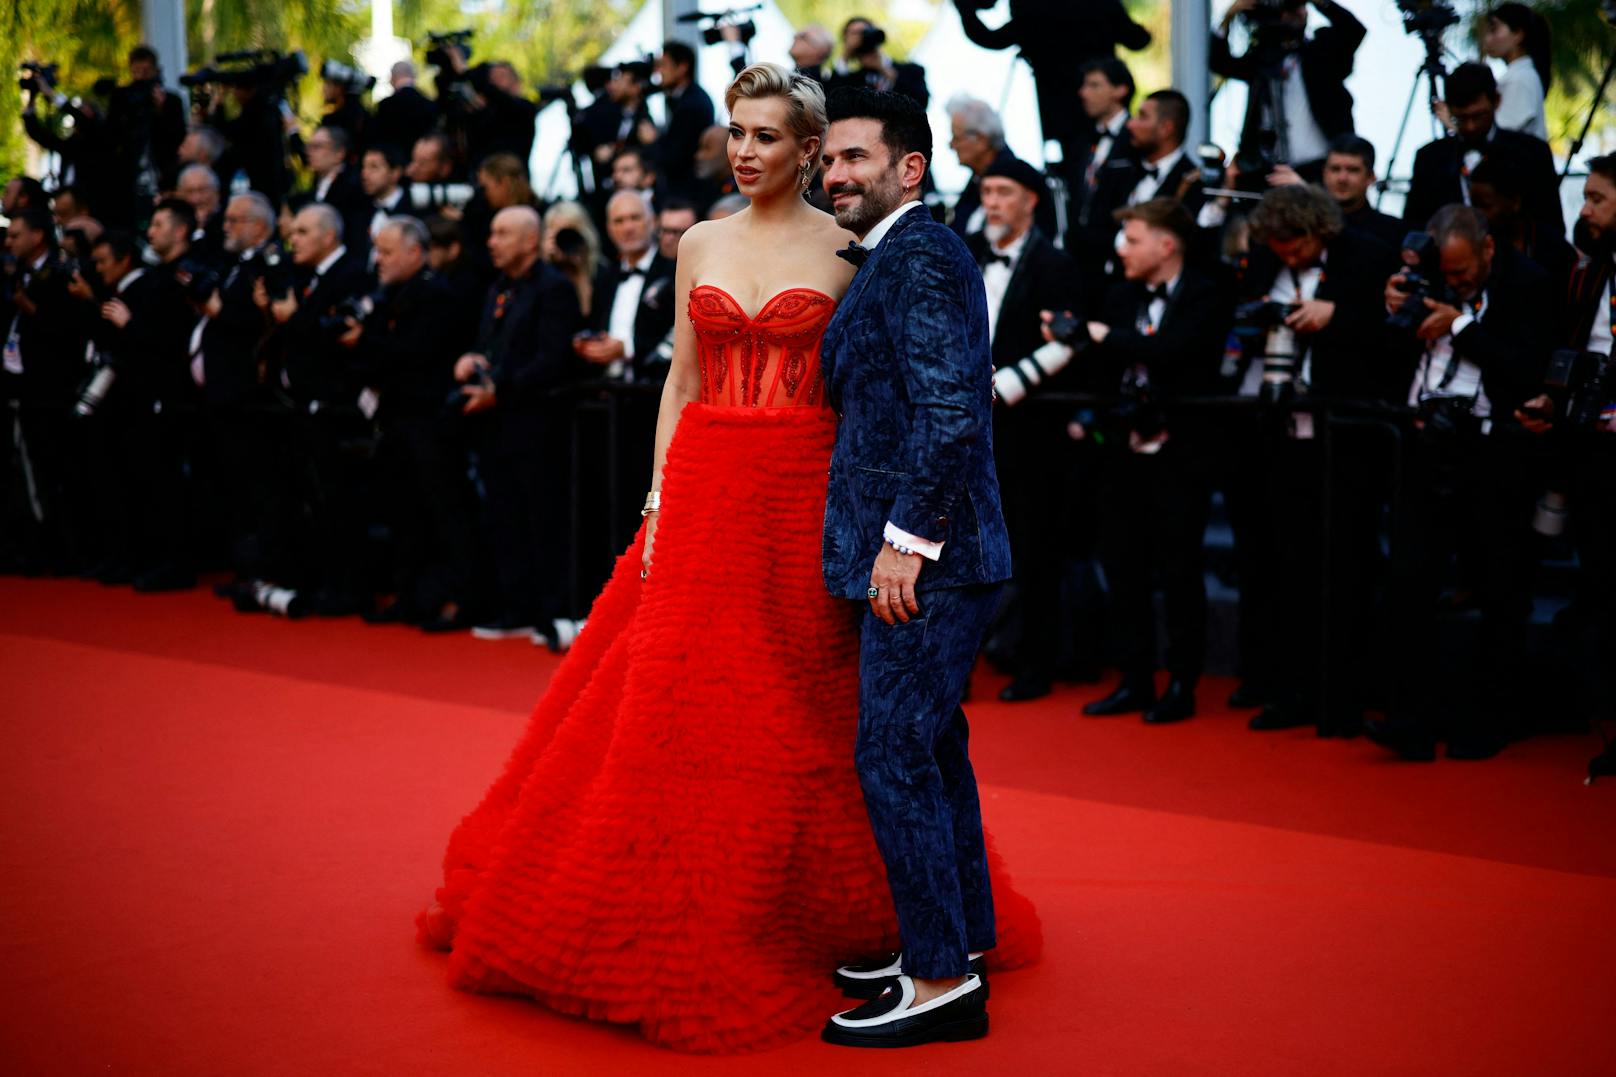 Überraschend: Marc Terenzi und Verena Kerth zeigten sich in Cannes auf dem roten Teppich.